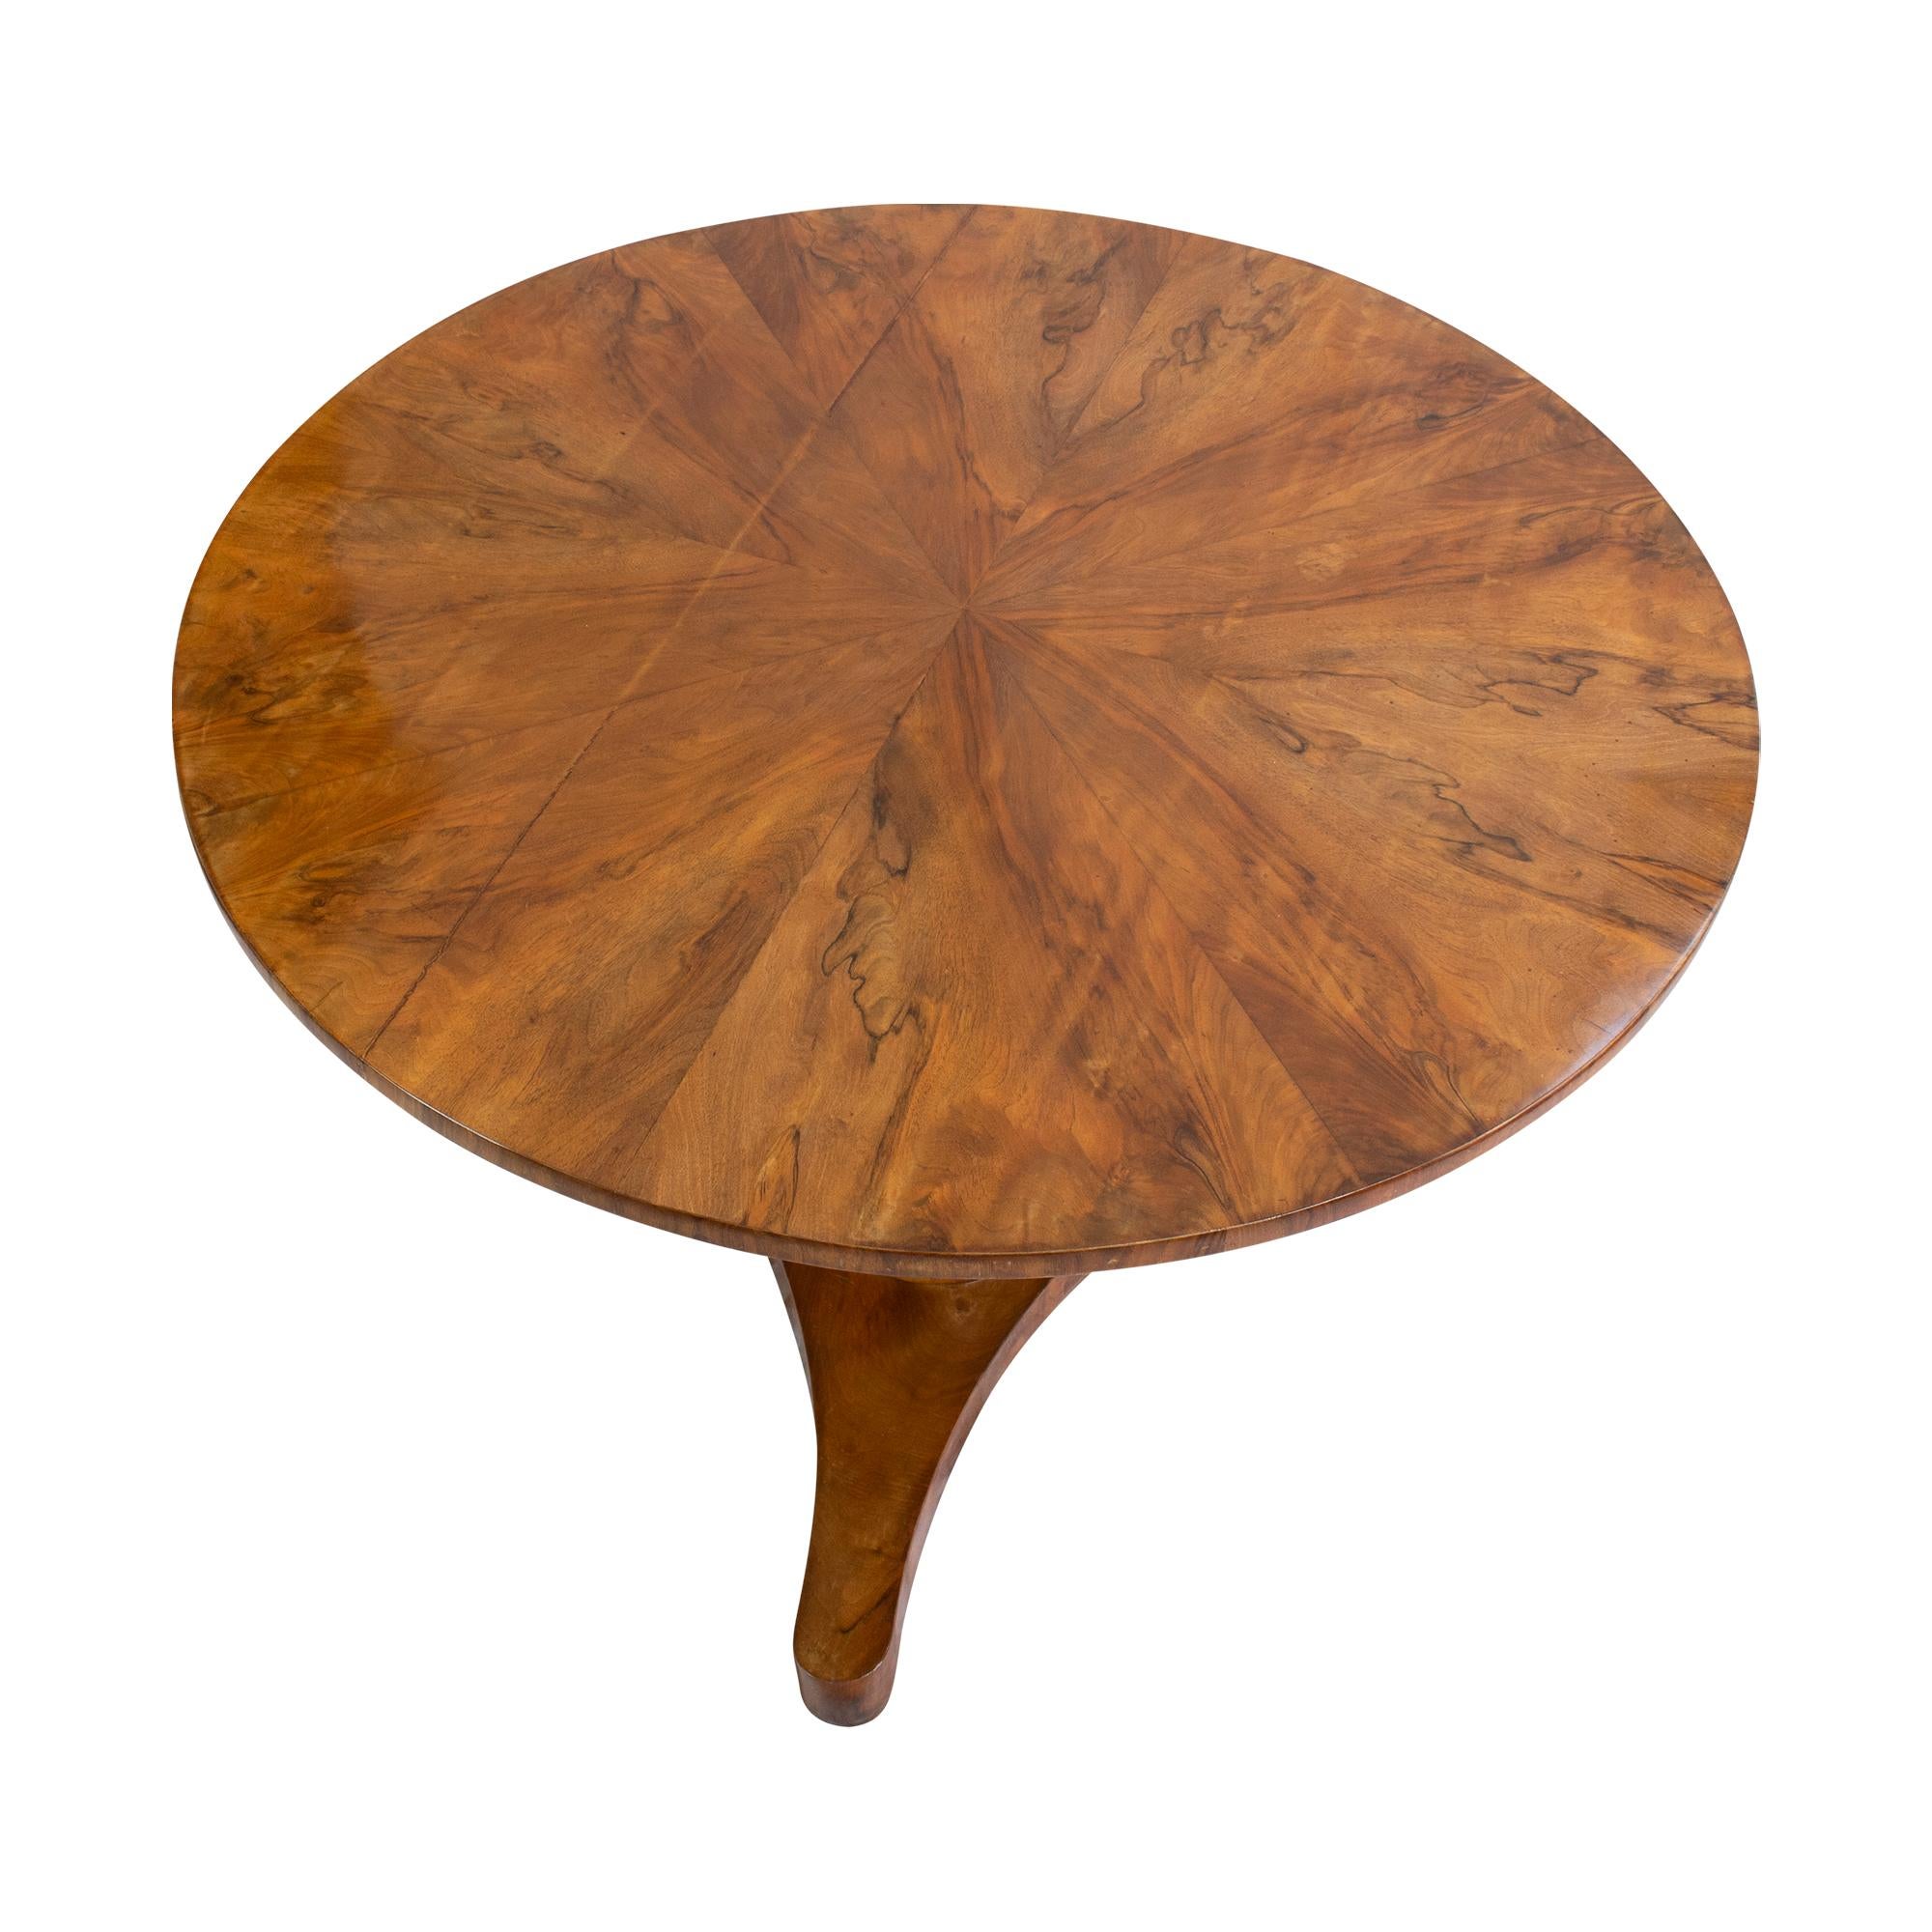 Runder Biedermeier-Salontisch aus der Biedermeierzeit um 1820. Der Tisch ist aus Nussbaum / Nussbaumfurnier auf Fichtenholz gefertigt. Die Tischplatte kann mit dem Original-Holzgewinde werkzeuglos abgedreht werden. Der Tisch befindet sich in einem